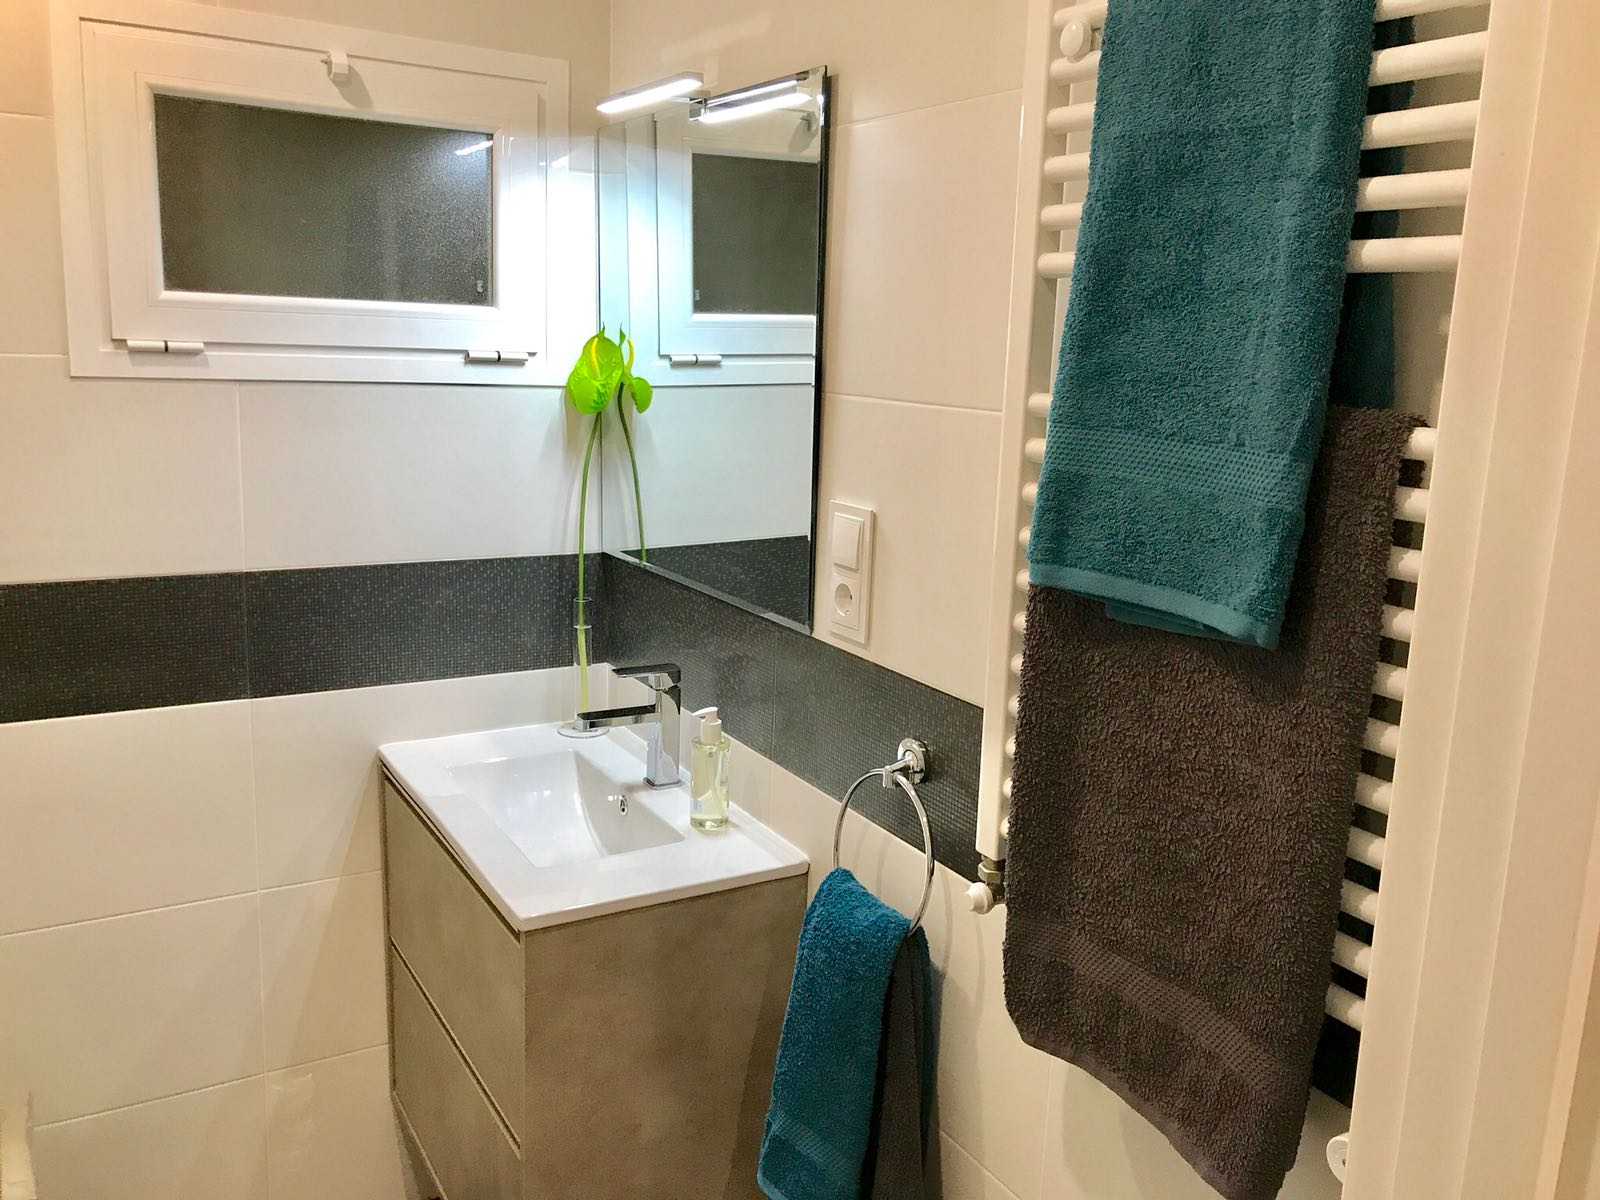 baño reformado detalle calefactor toallas y espejo